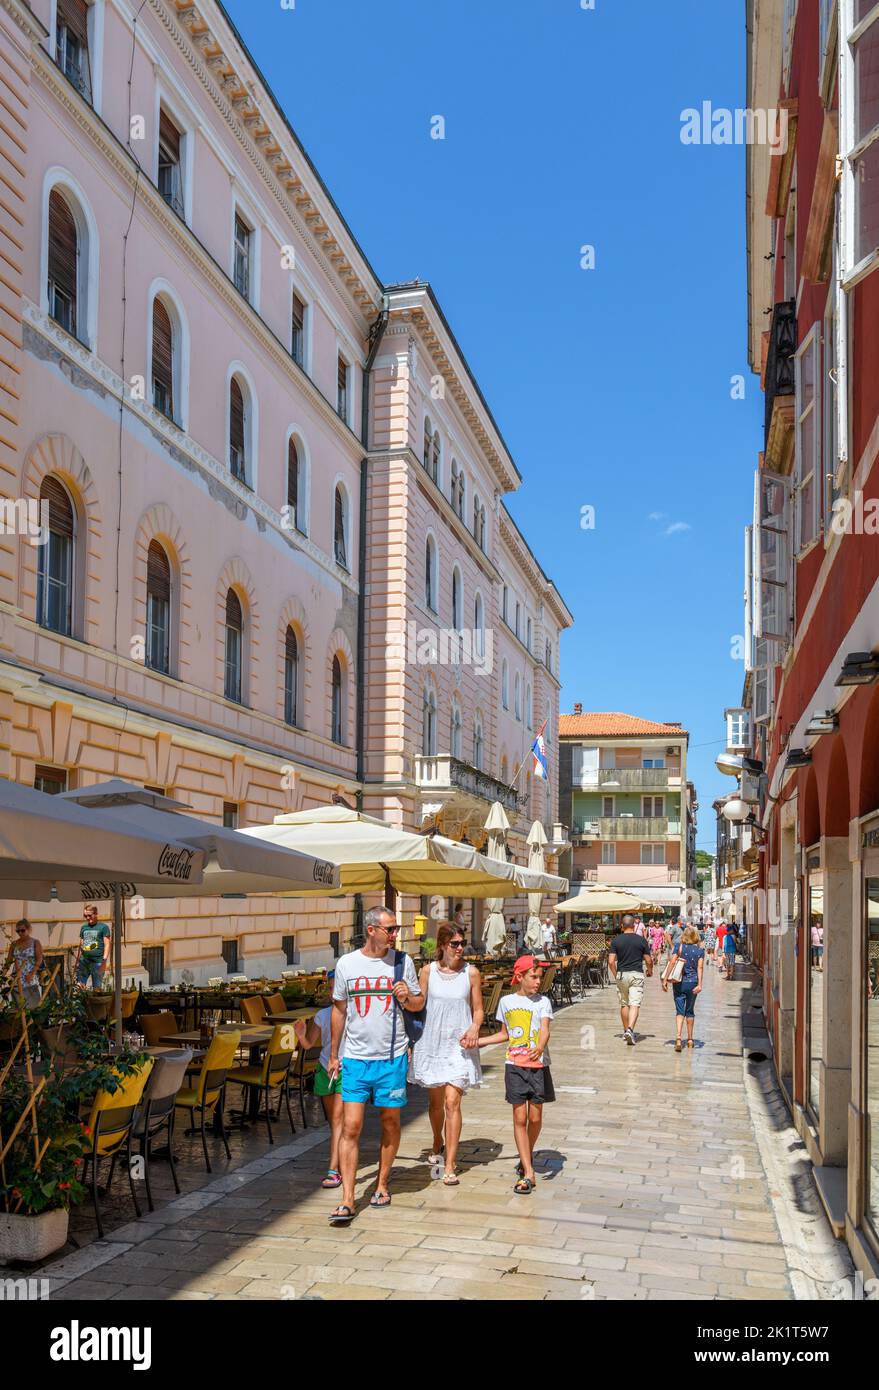 Restaurant dans une rue étroite de la vieille ville historique, Zadar, Croatie Banque D'Images